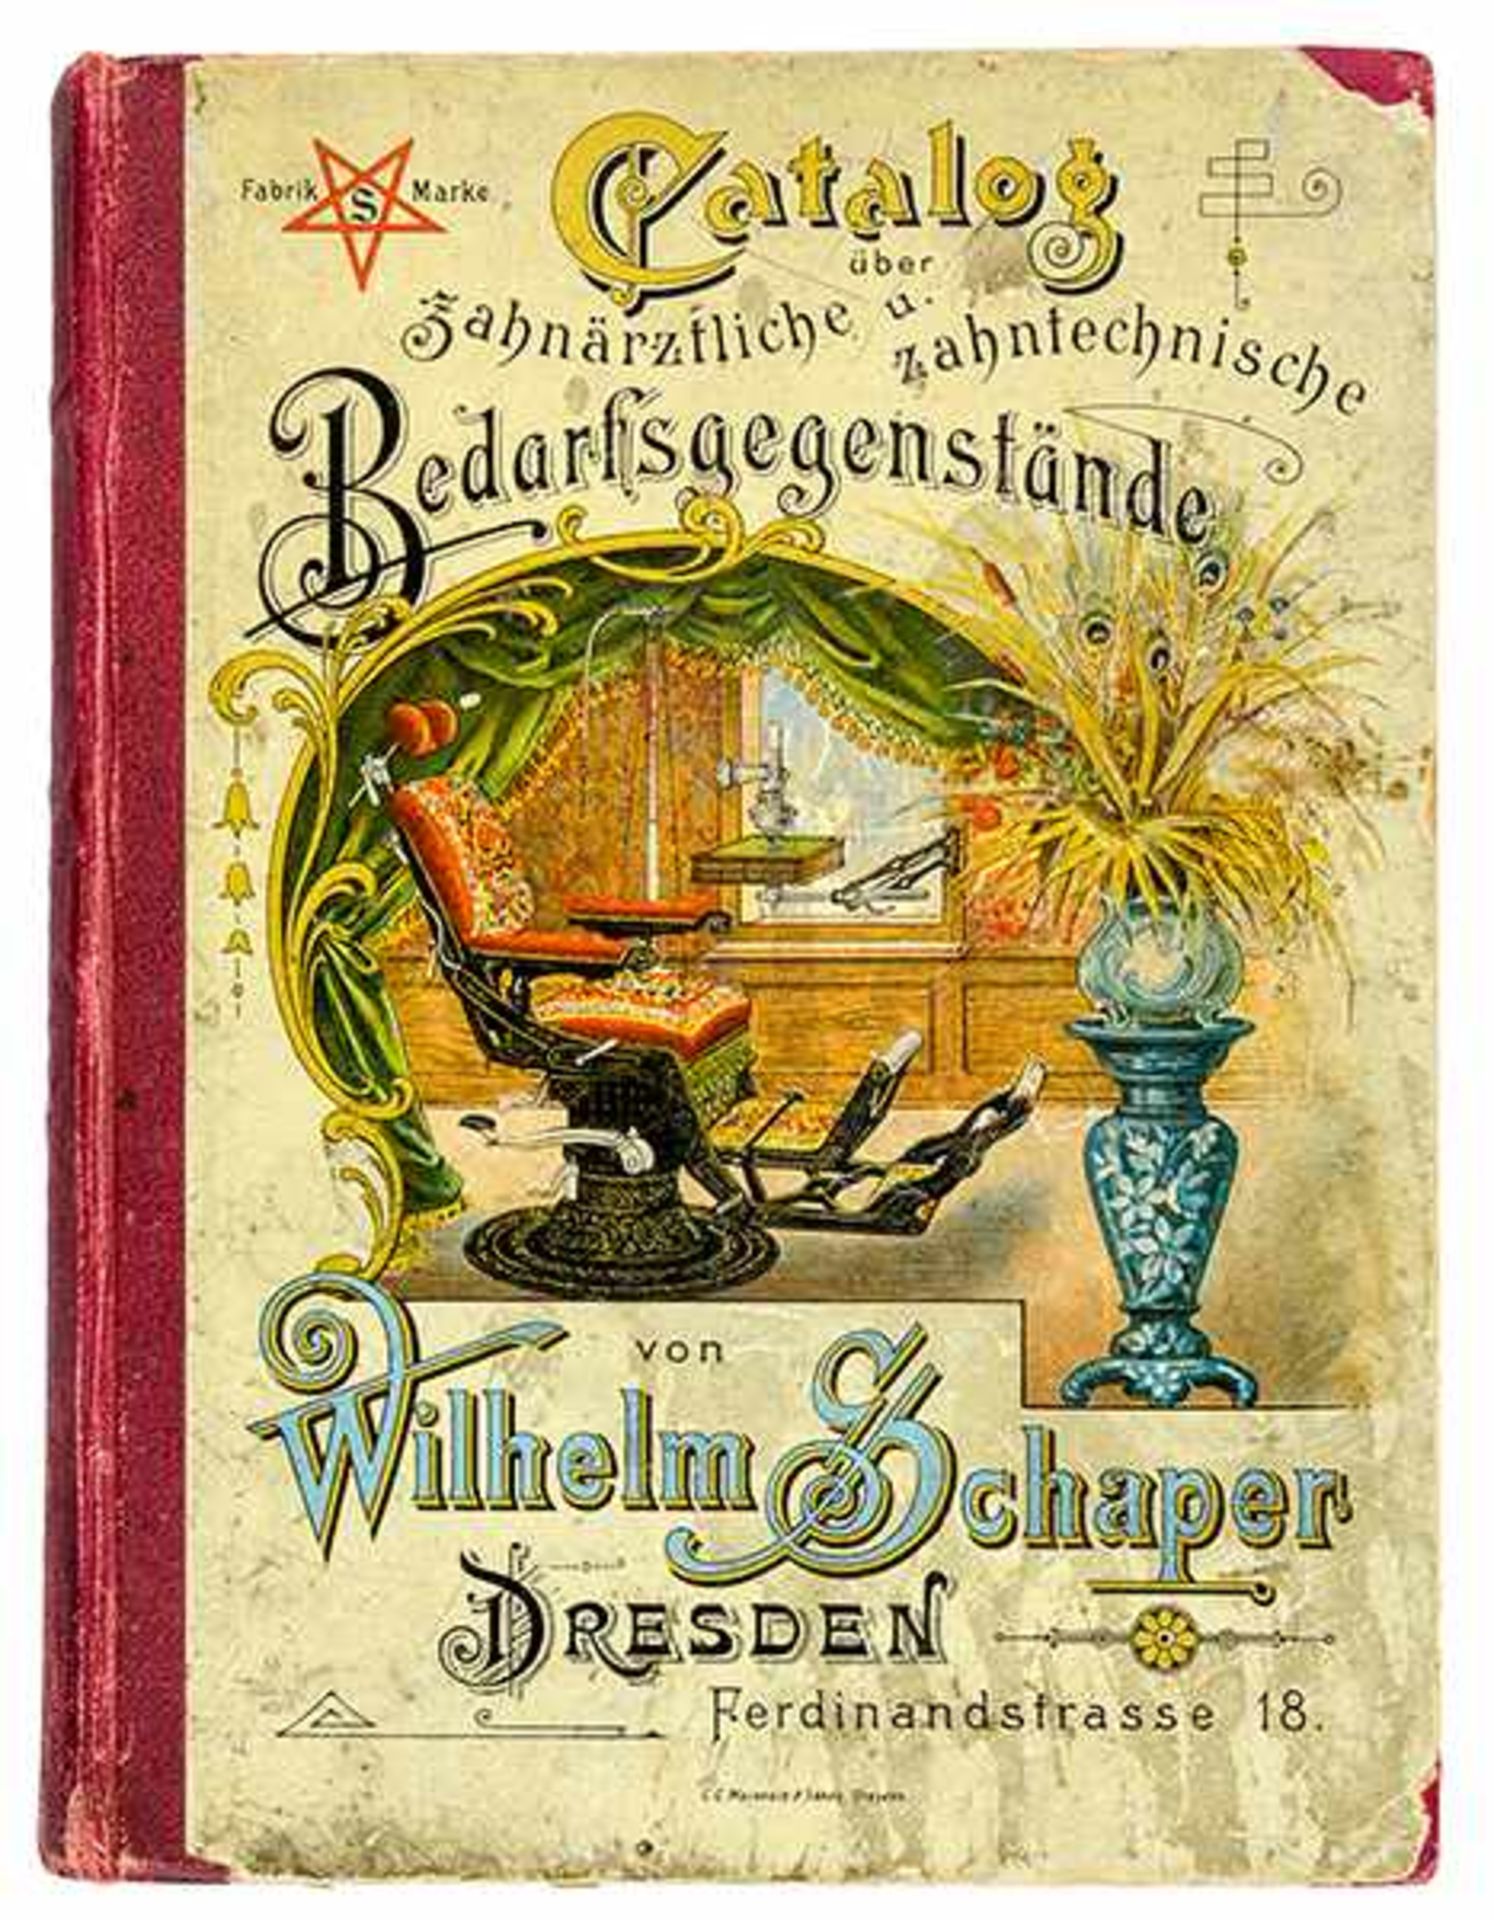 Medizin - Zahnmedizin - - Schaper, Wilhelm. Catalog über zahnärztliche und zahntechnische